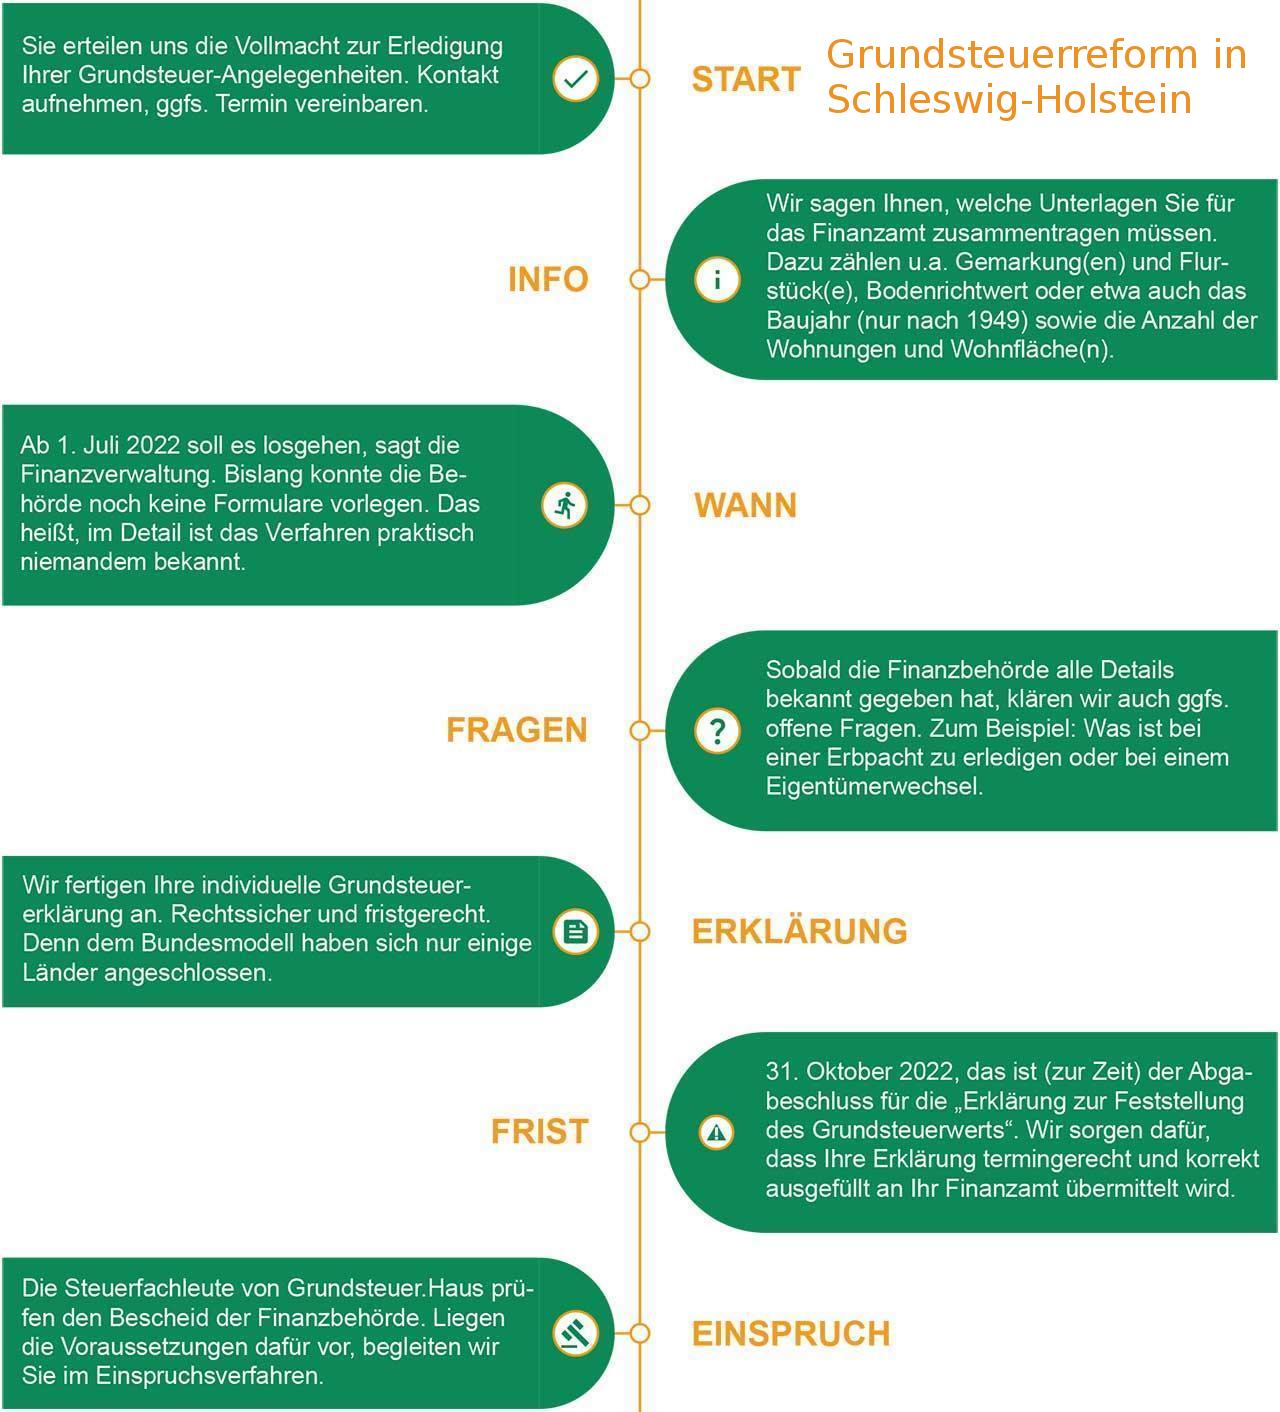 Foto-Collage mit Informationen zu Grundsteuerreform in Schleswig-Holstein